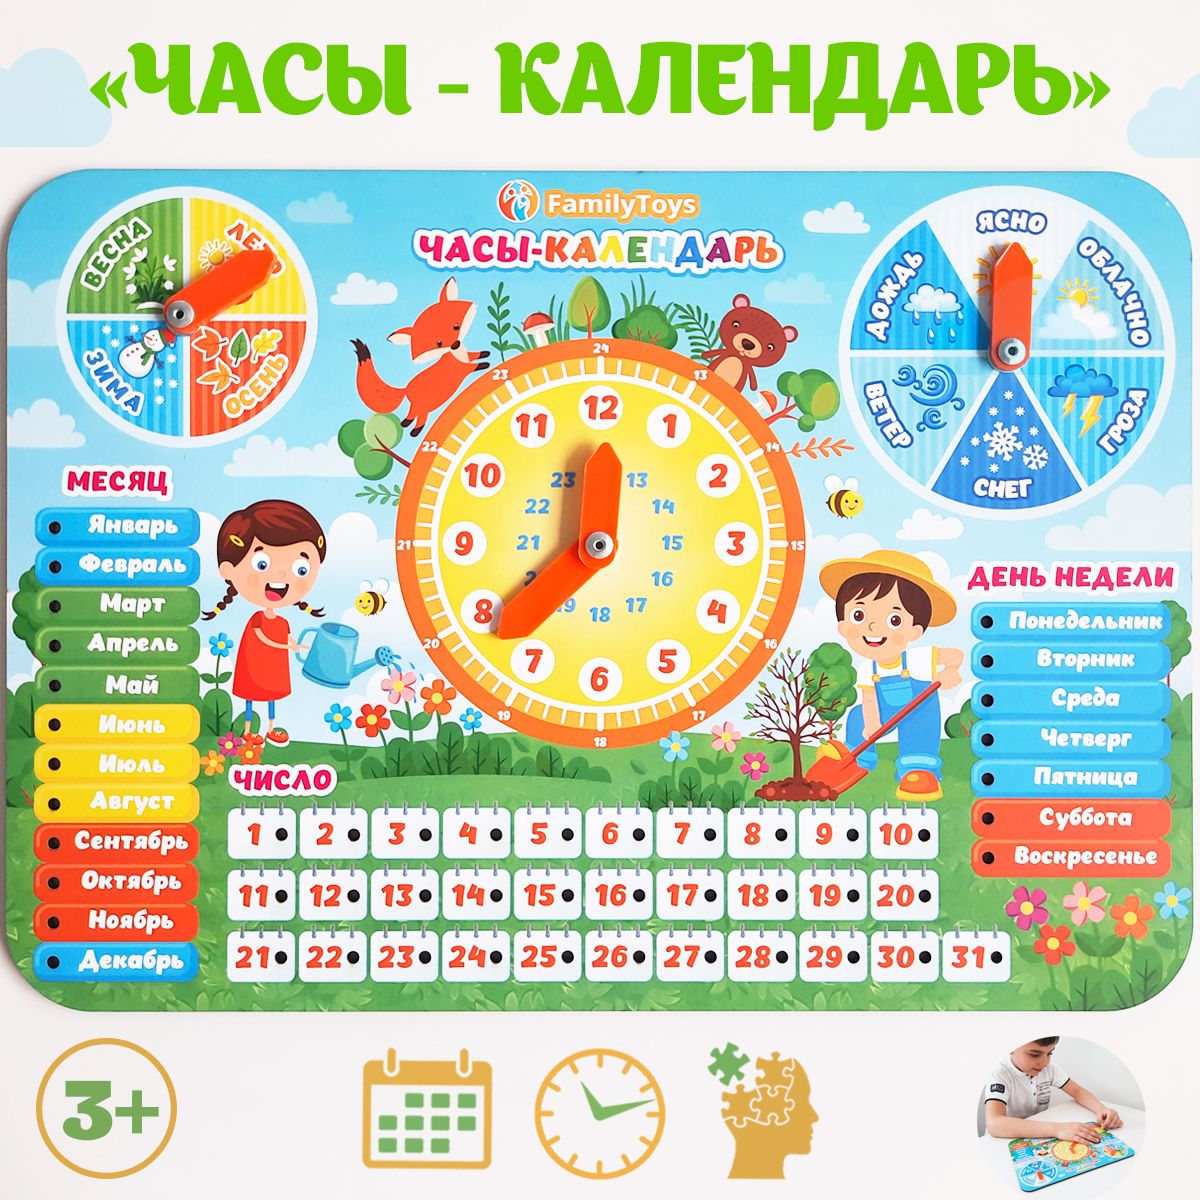 Часы-календарь игра развивающая бизиборд для детей